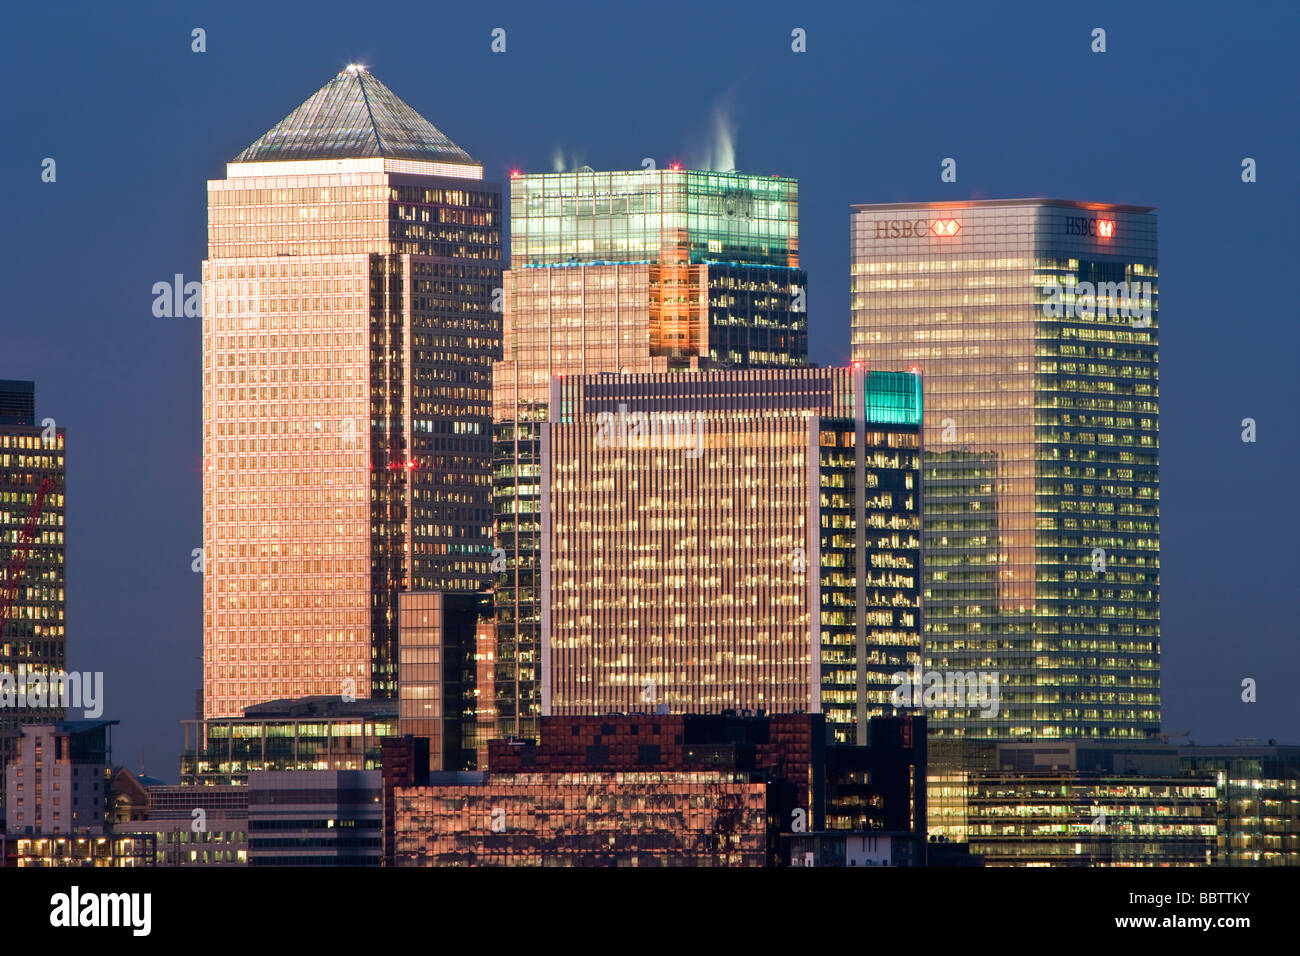 Immeubles de la Banque dans le centre financier de Canary Wharf Londres Angleterre Royaume-Uni Banque D'Images